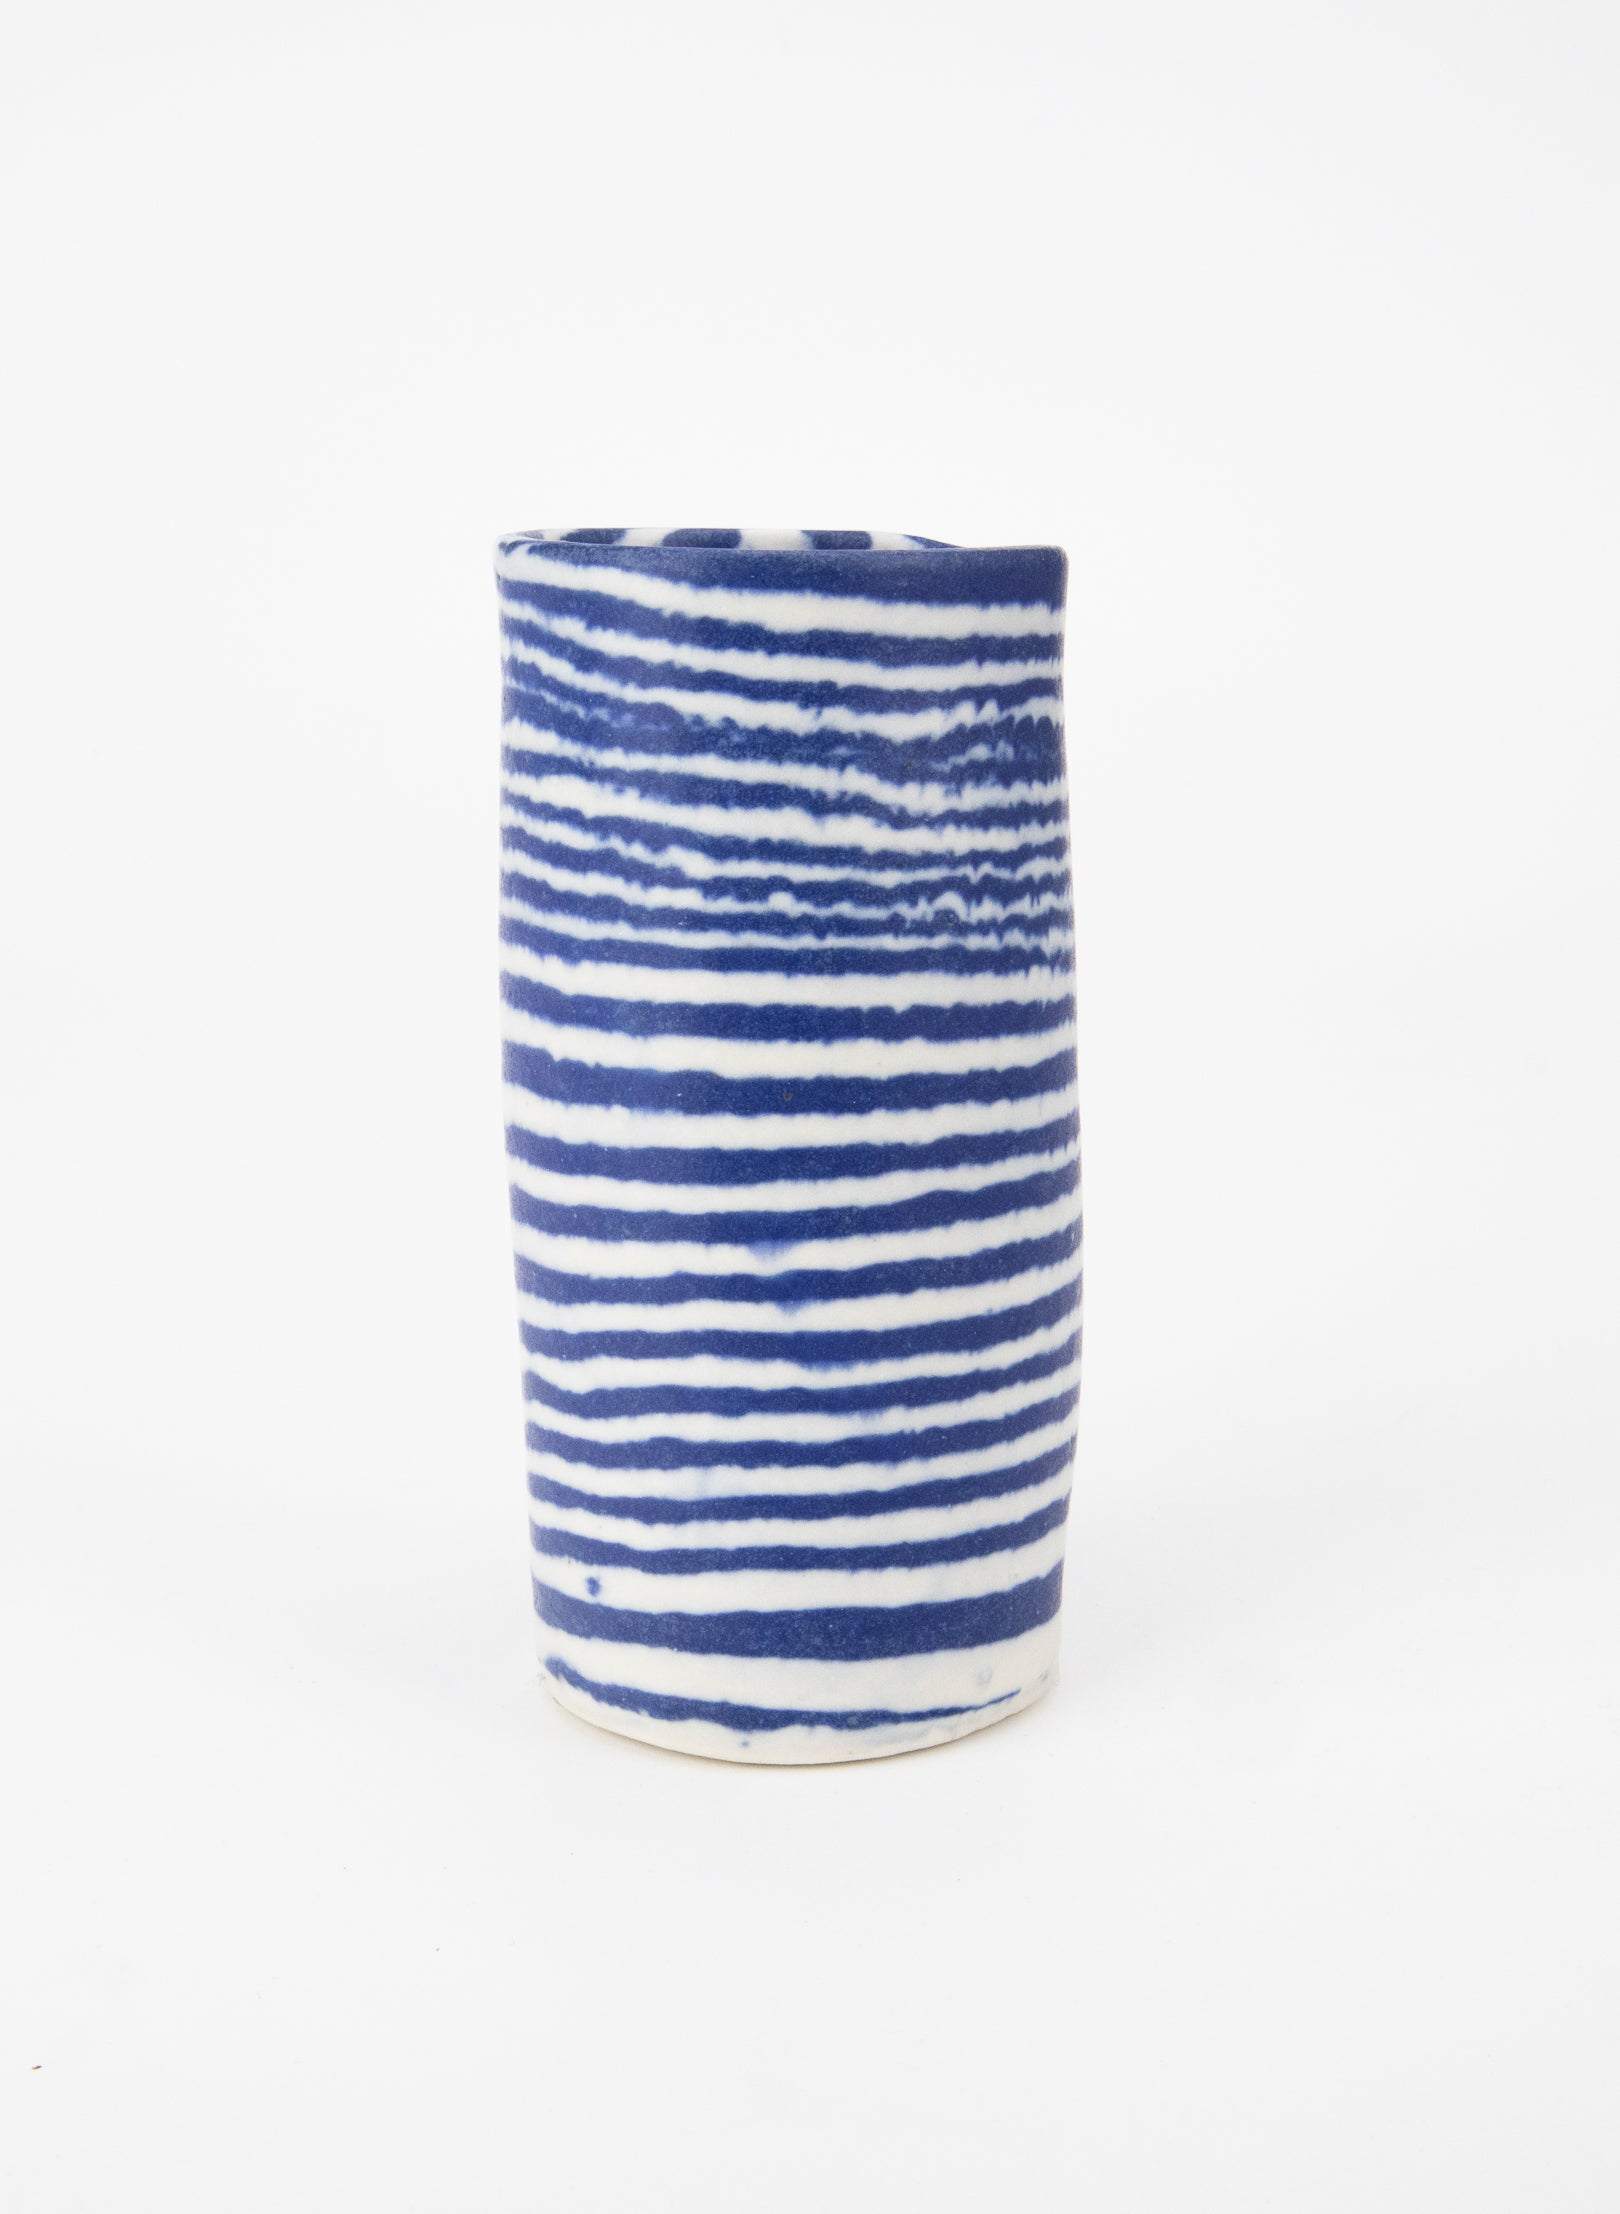 Nerikomi Blue Tiny Vase